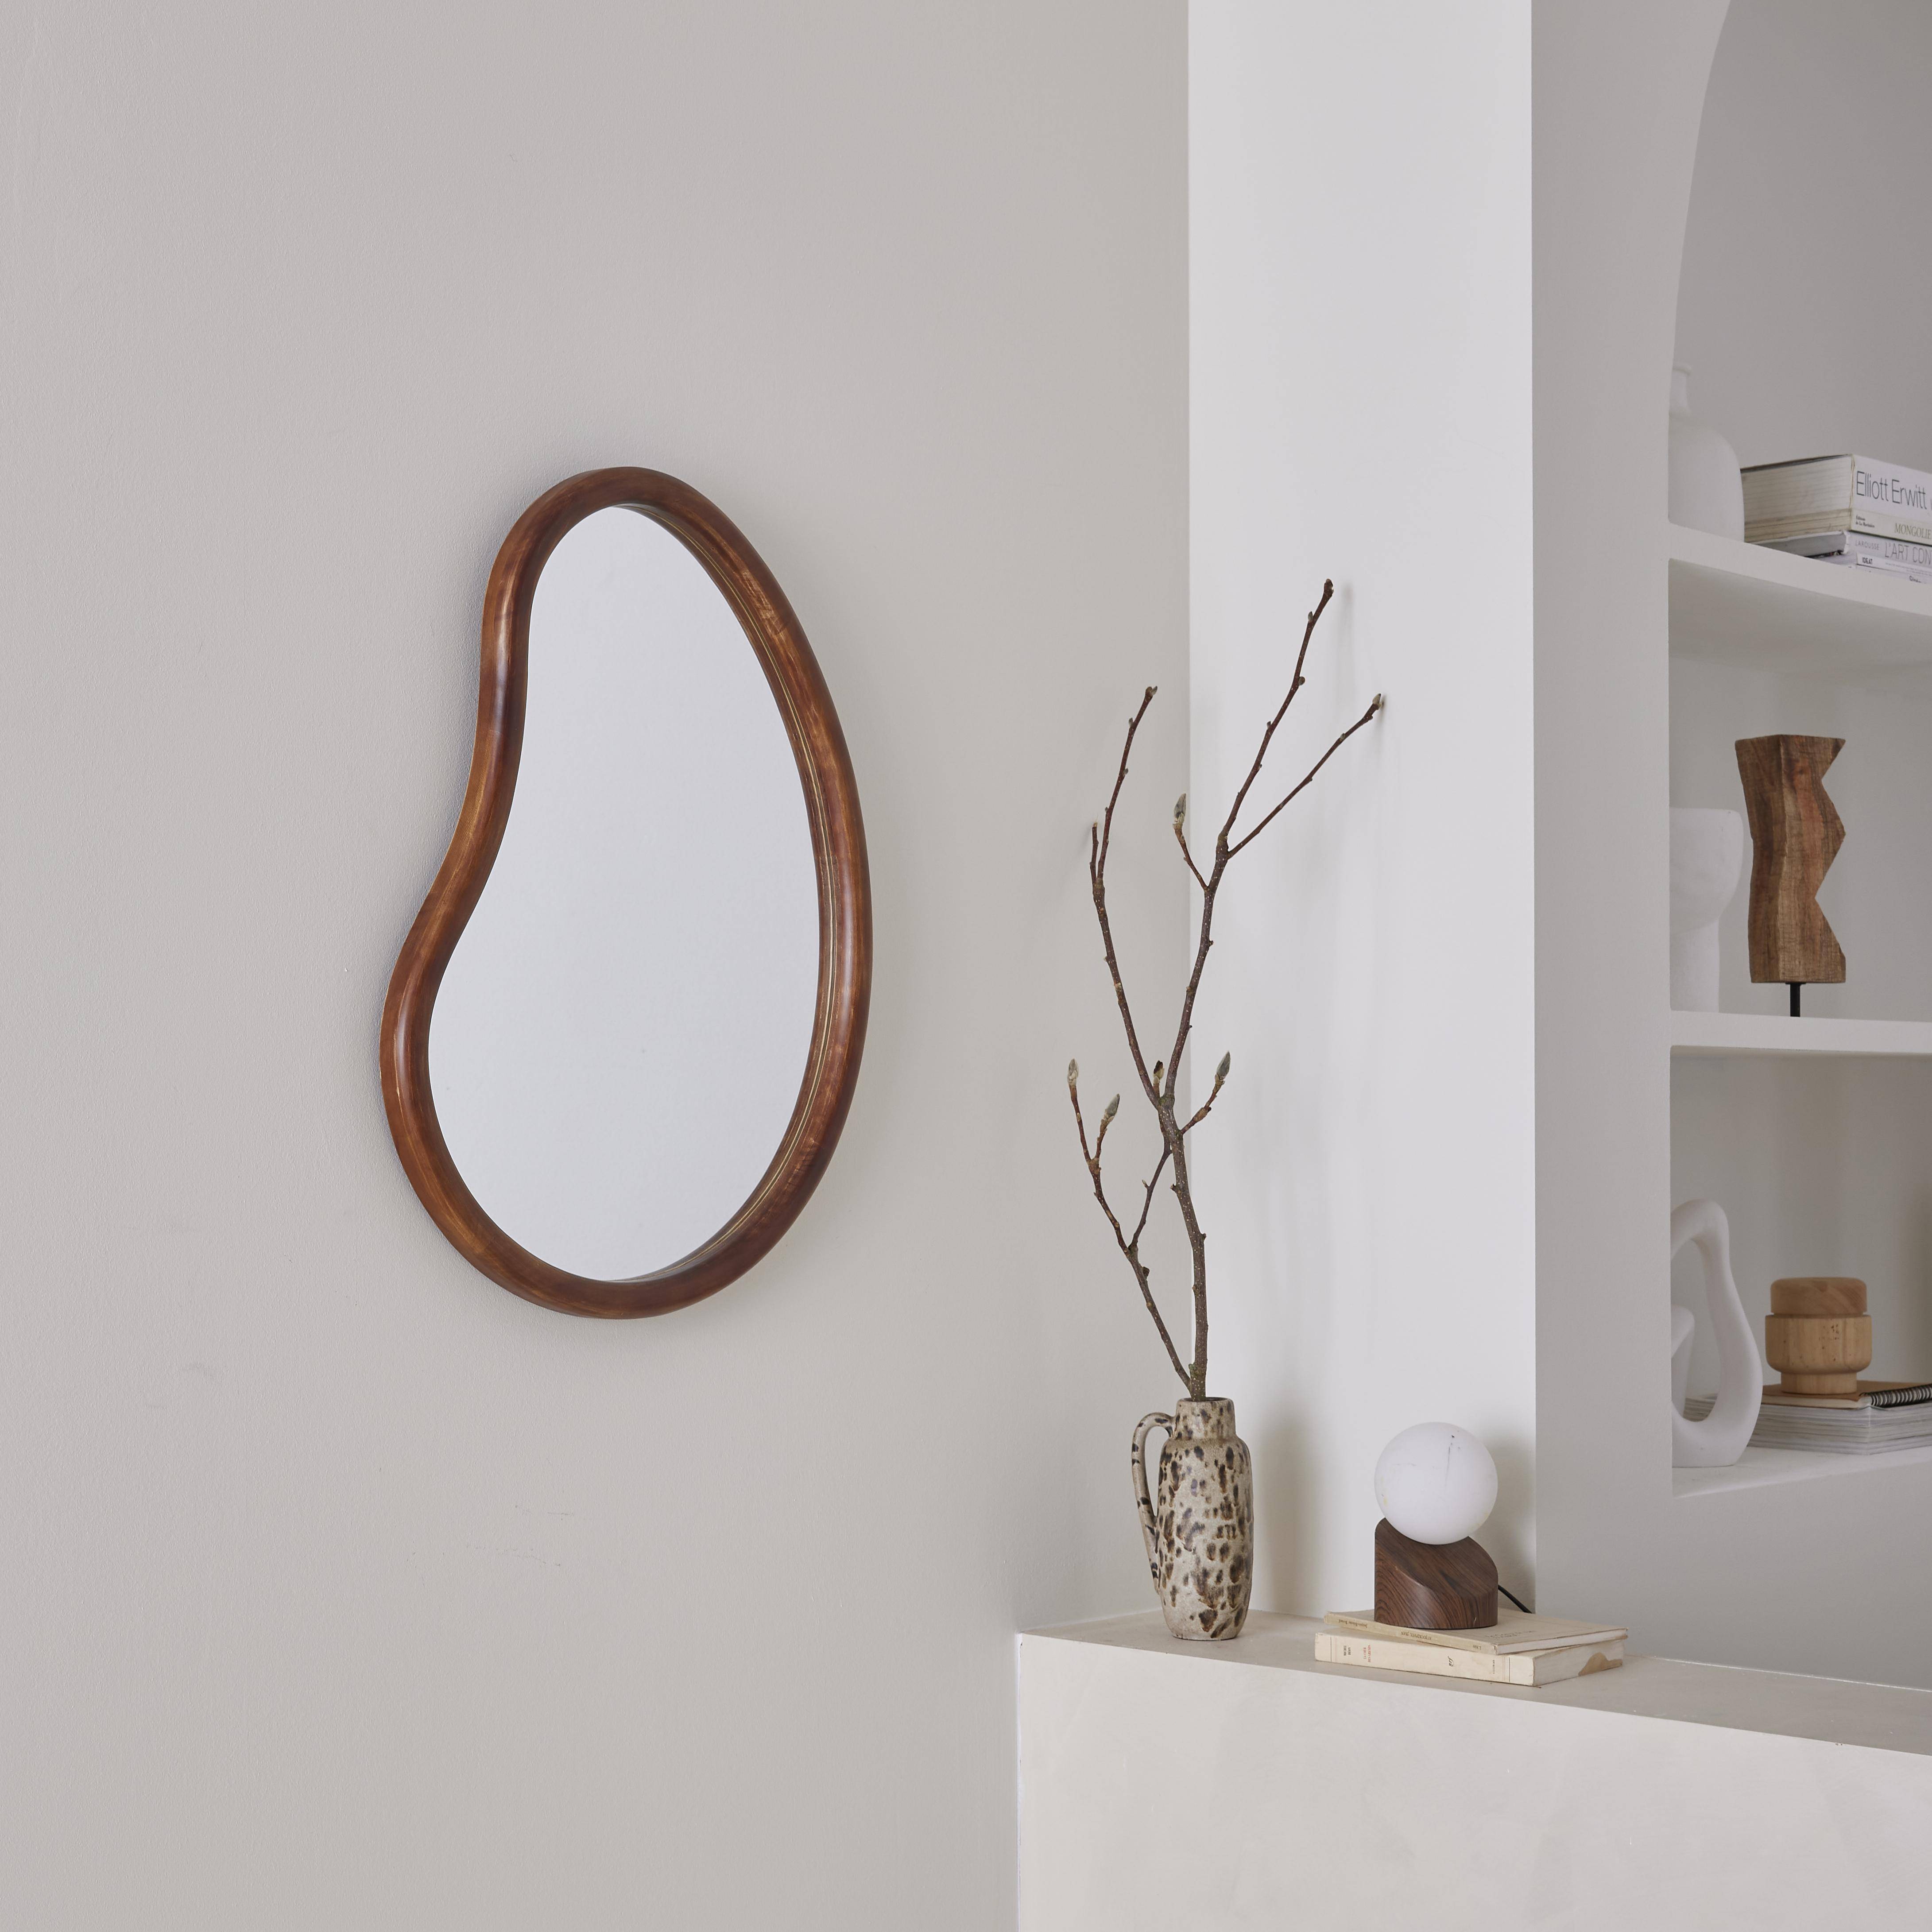 Miroir organique en bois de sapin 65cm épaisseur 3cm coloris noyer idéal entrée, chambre ou salle de bain,sweeek,Photo1